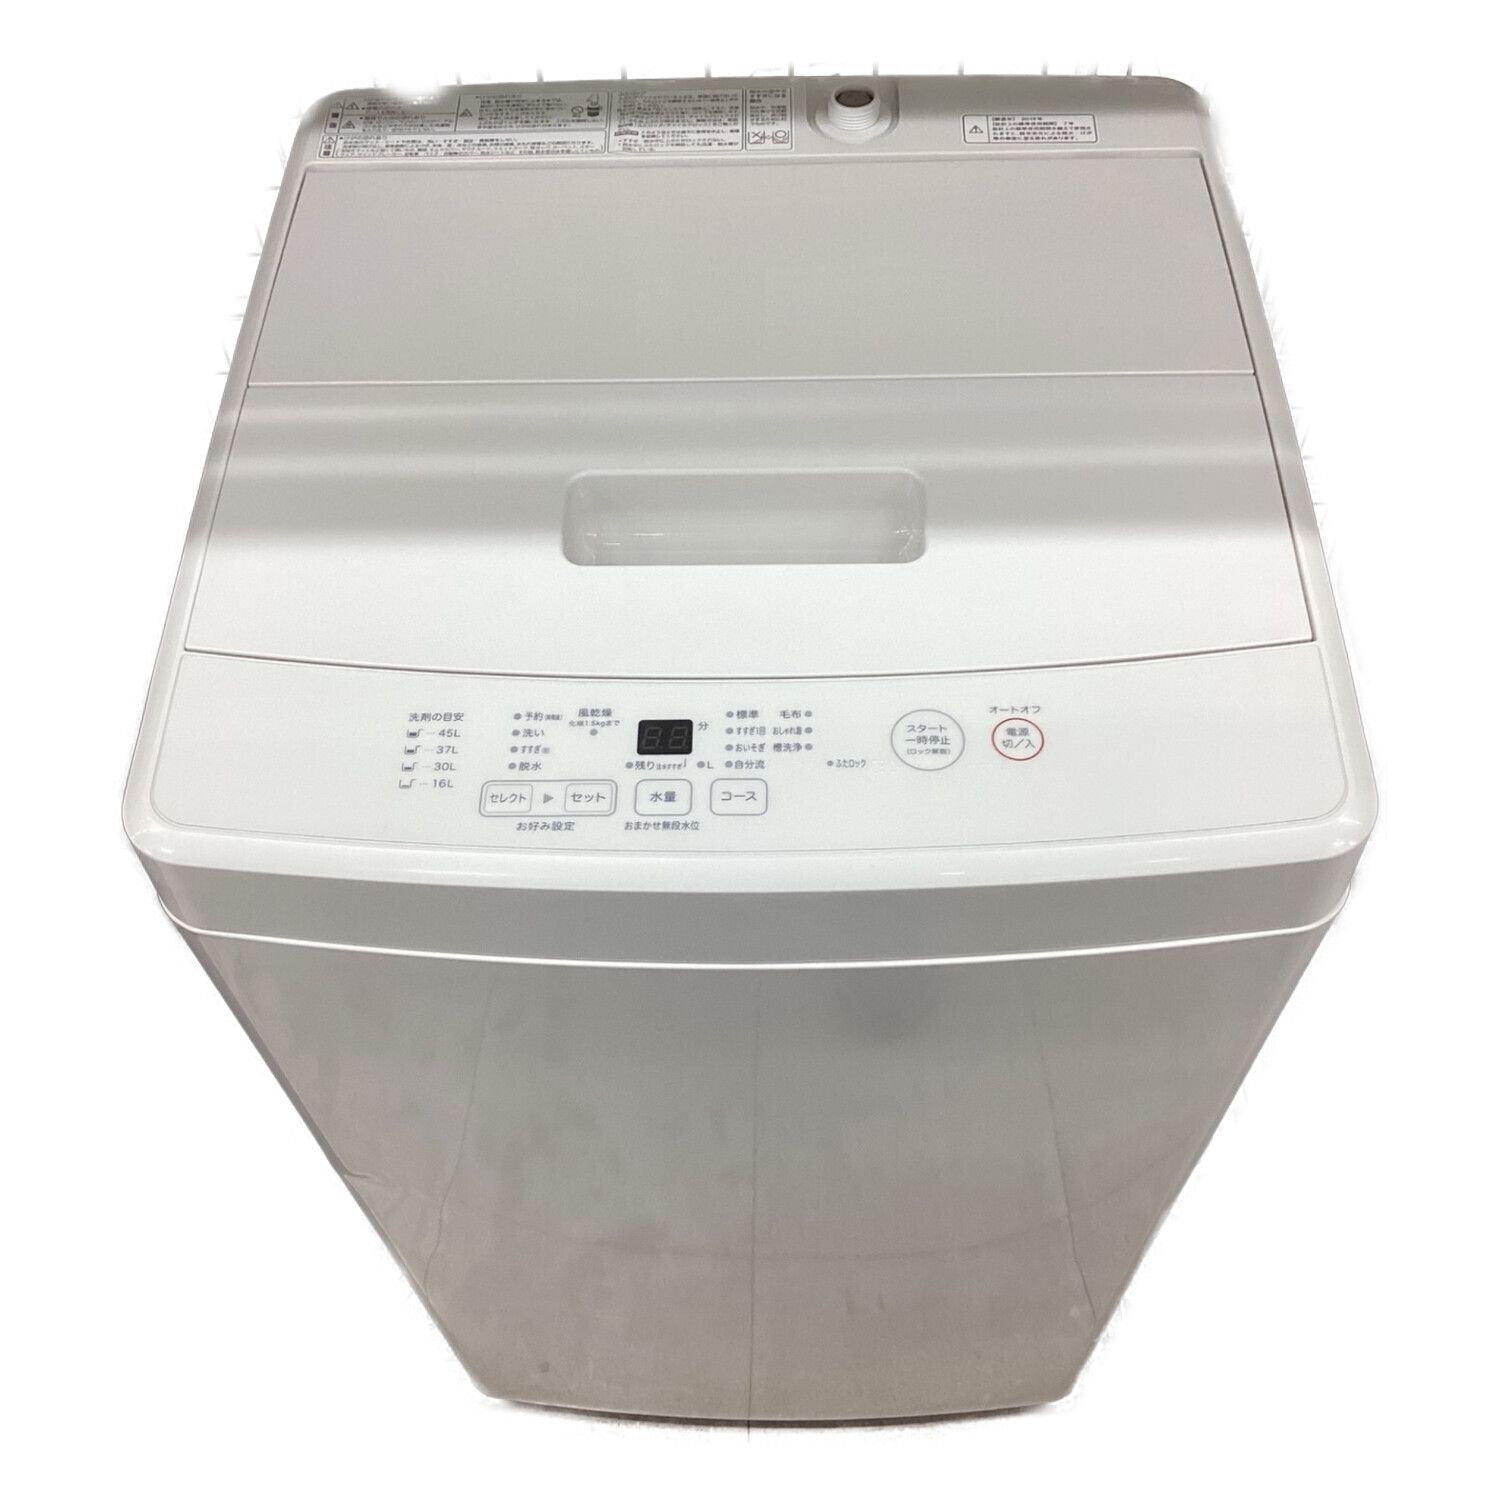 無印良品 (ムジルシリョウヒン) 全自動洗濯機 5.0kg MJ-W50A 2019年製 